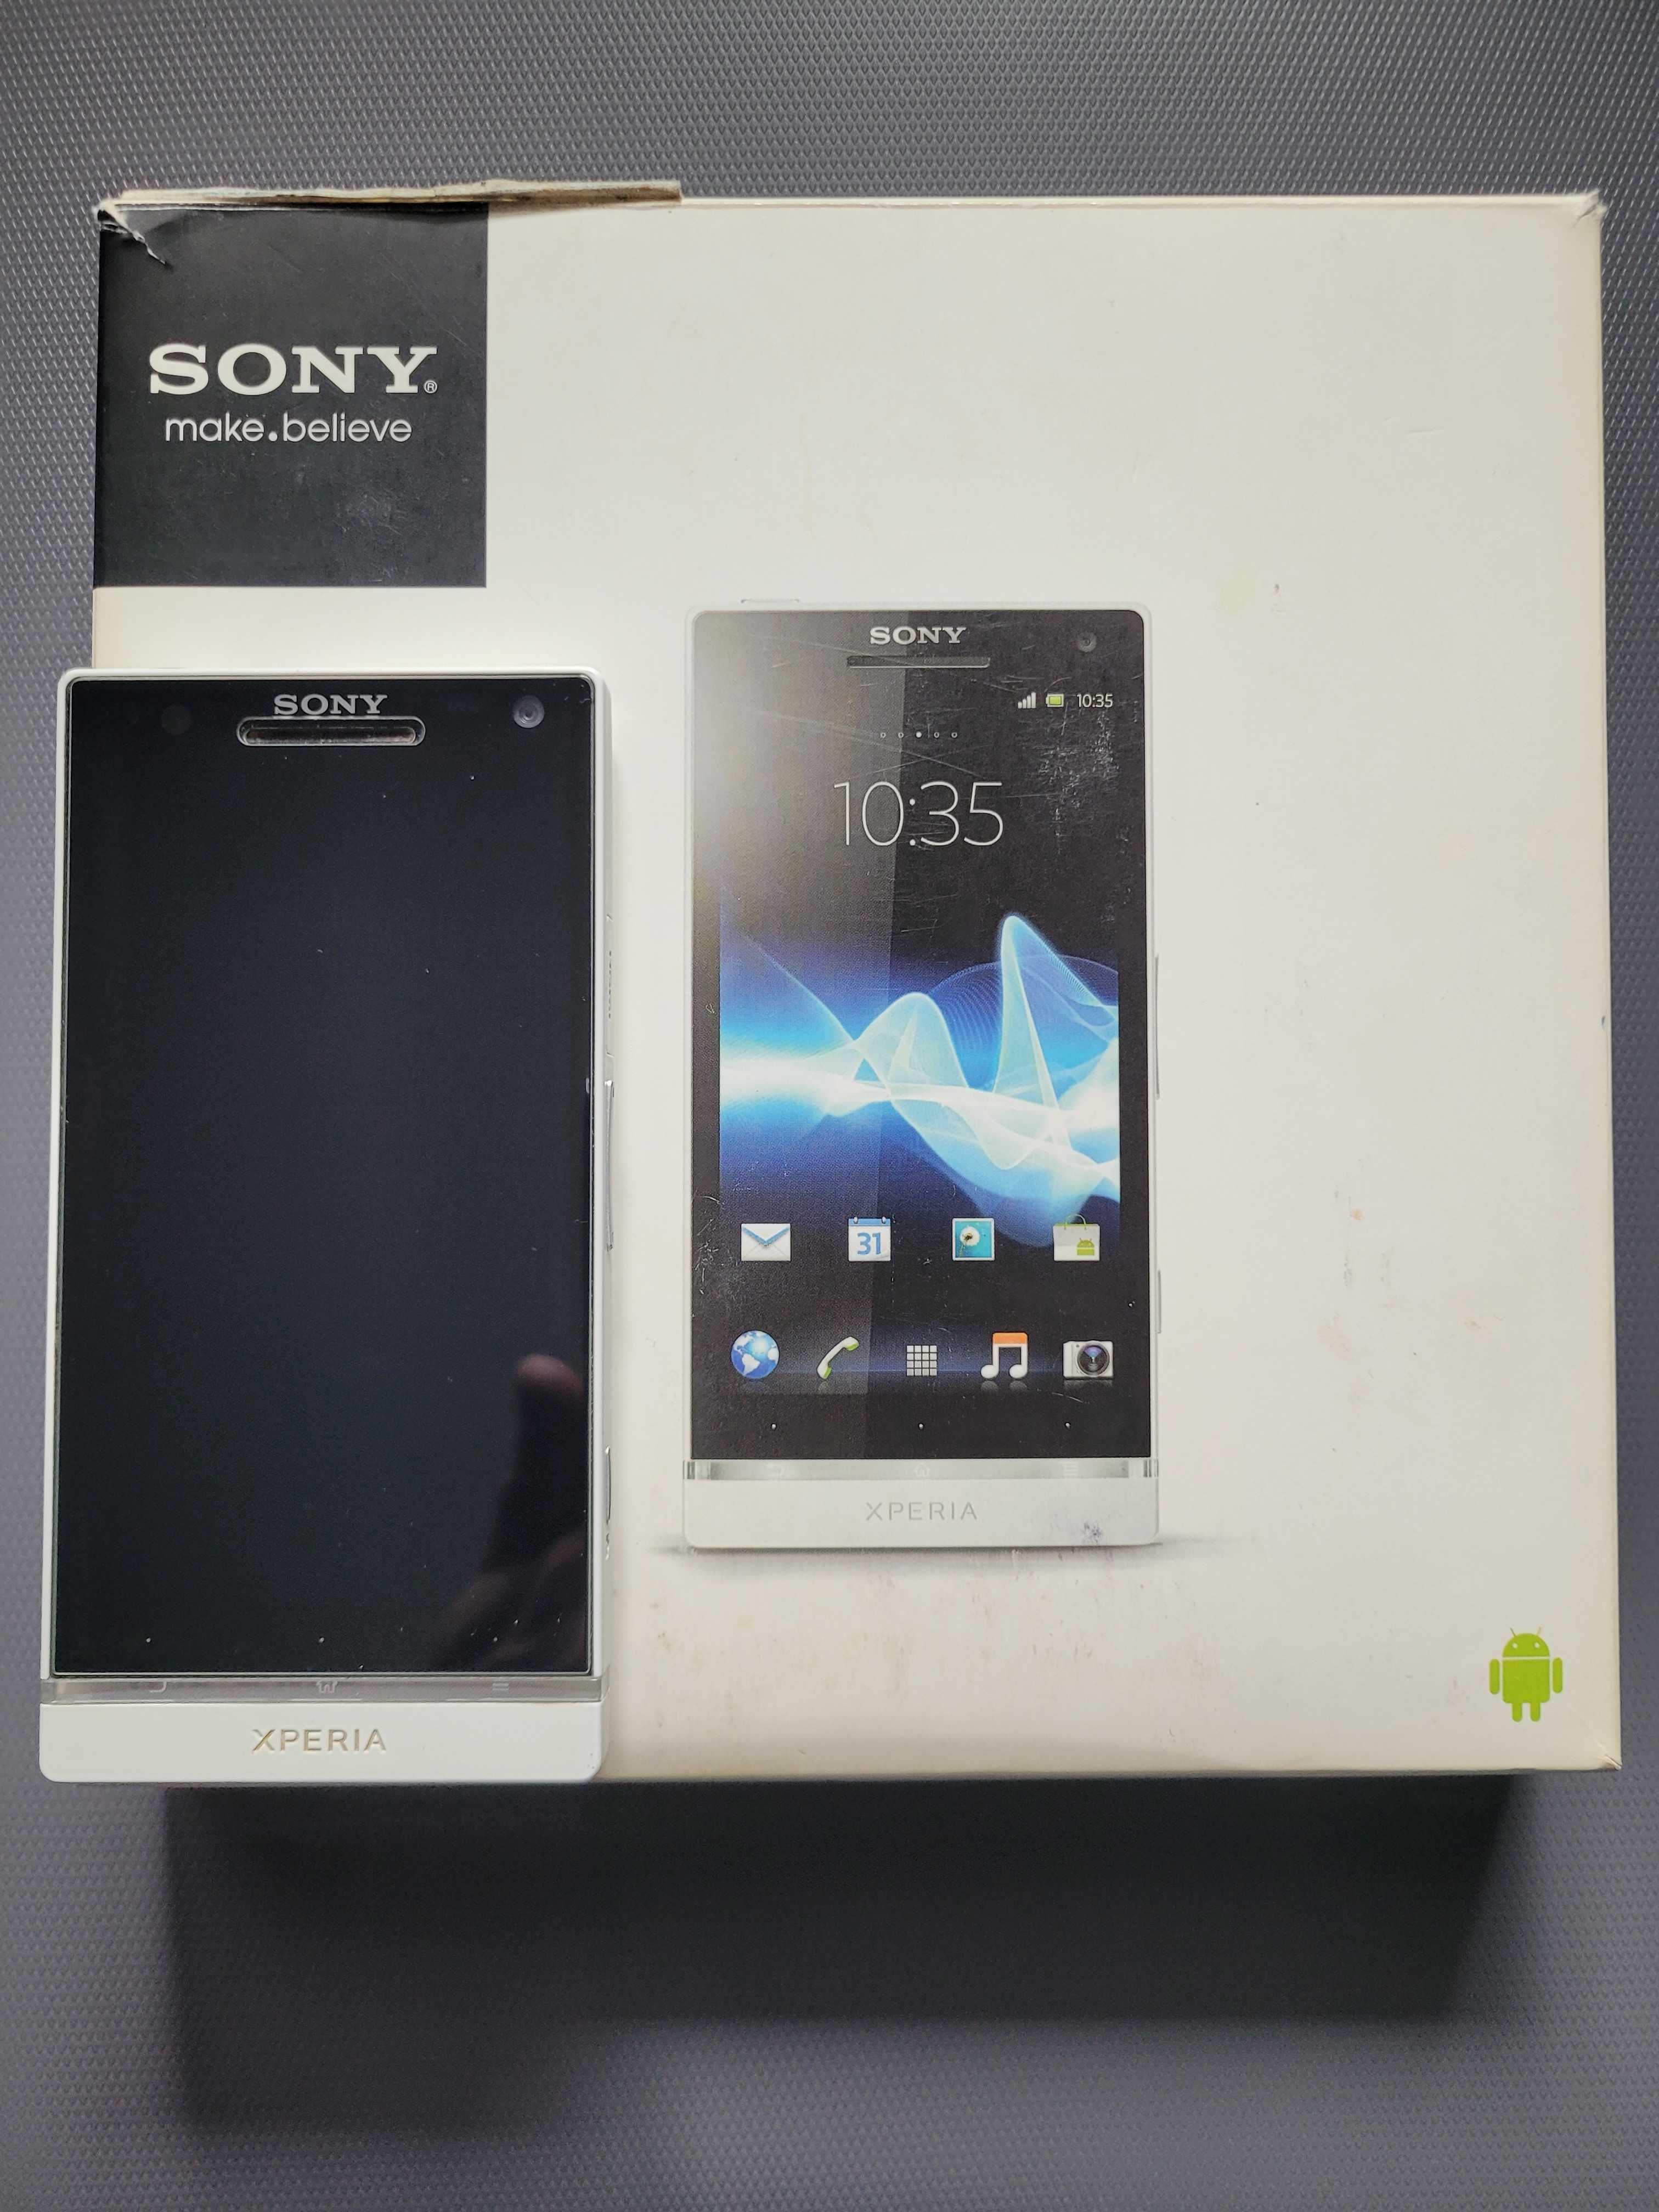 Smartfon Sony Xperia S LT26i